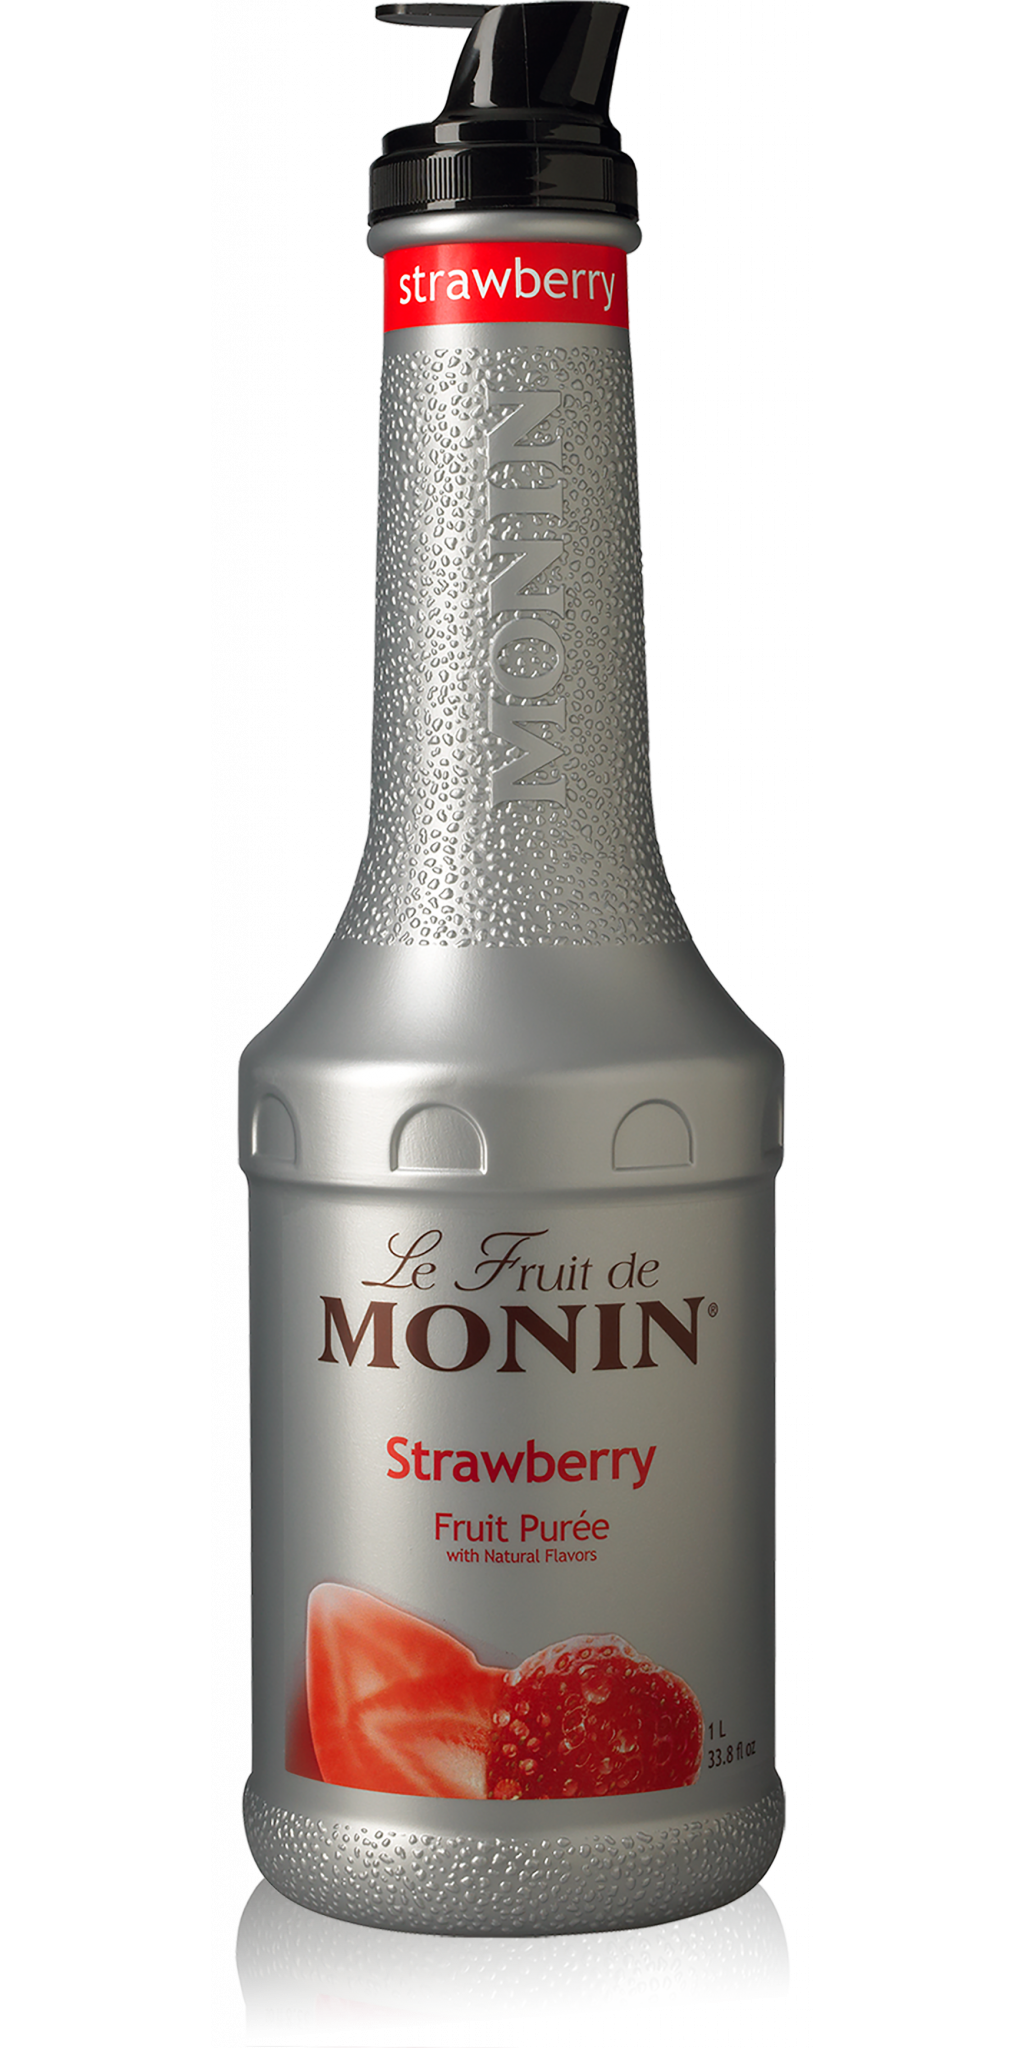 Monin Strawberry Fruit Purée